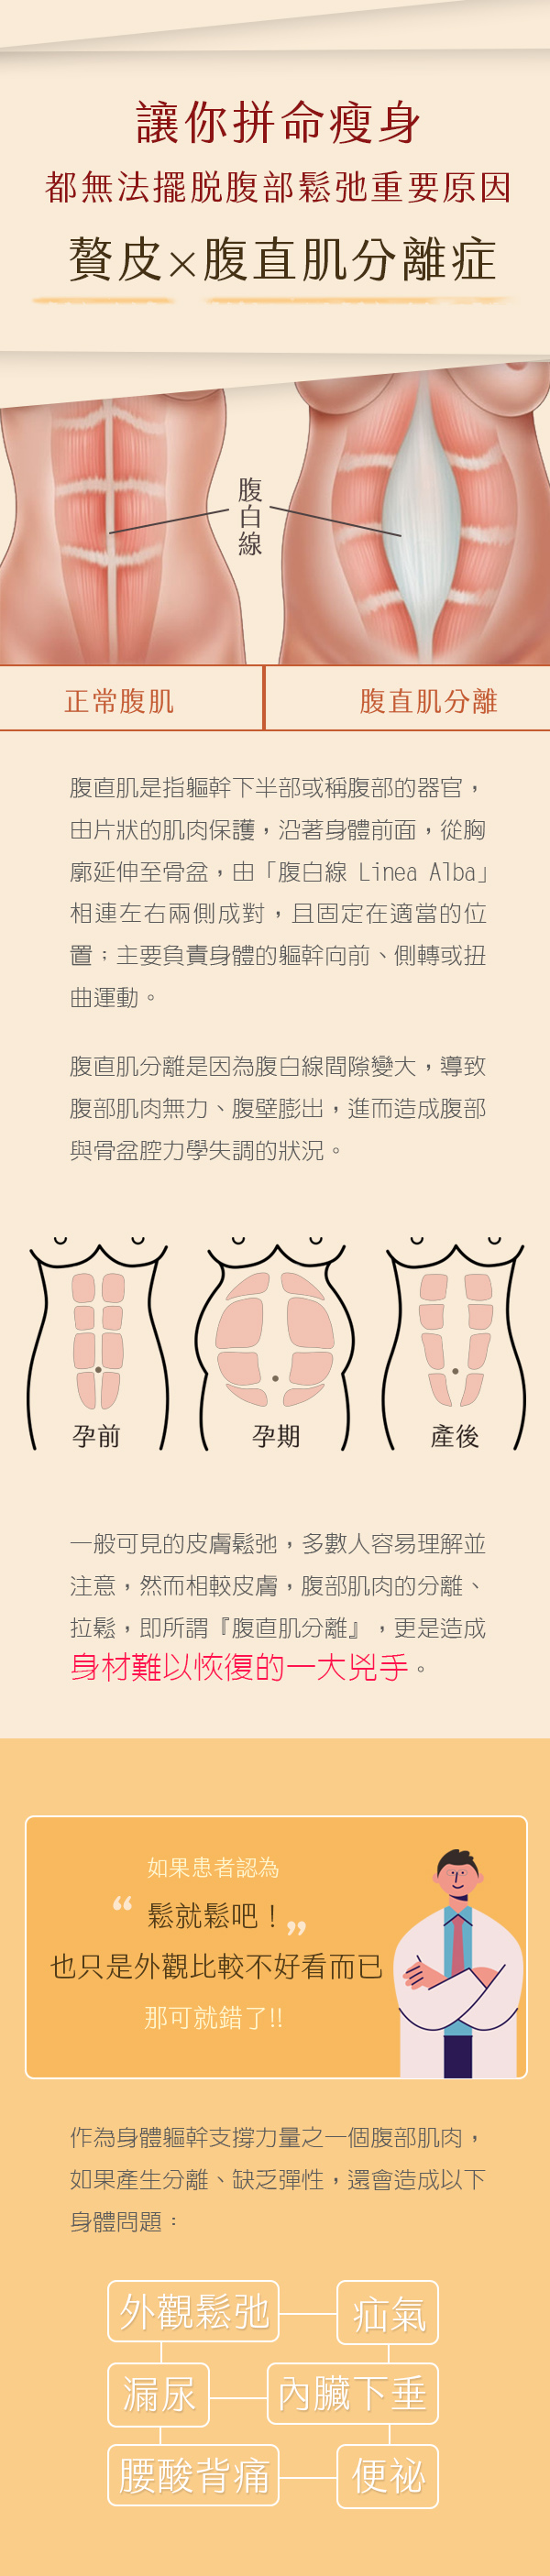 多層次筋膜腹部拉皮官網圖2